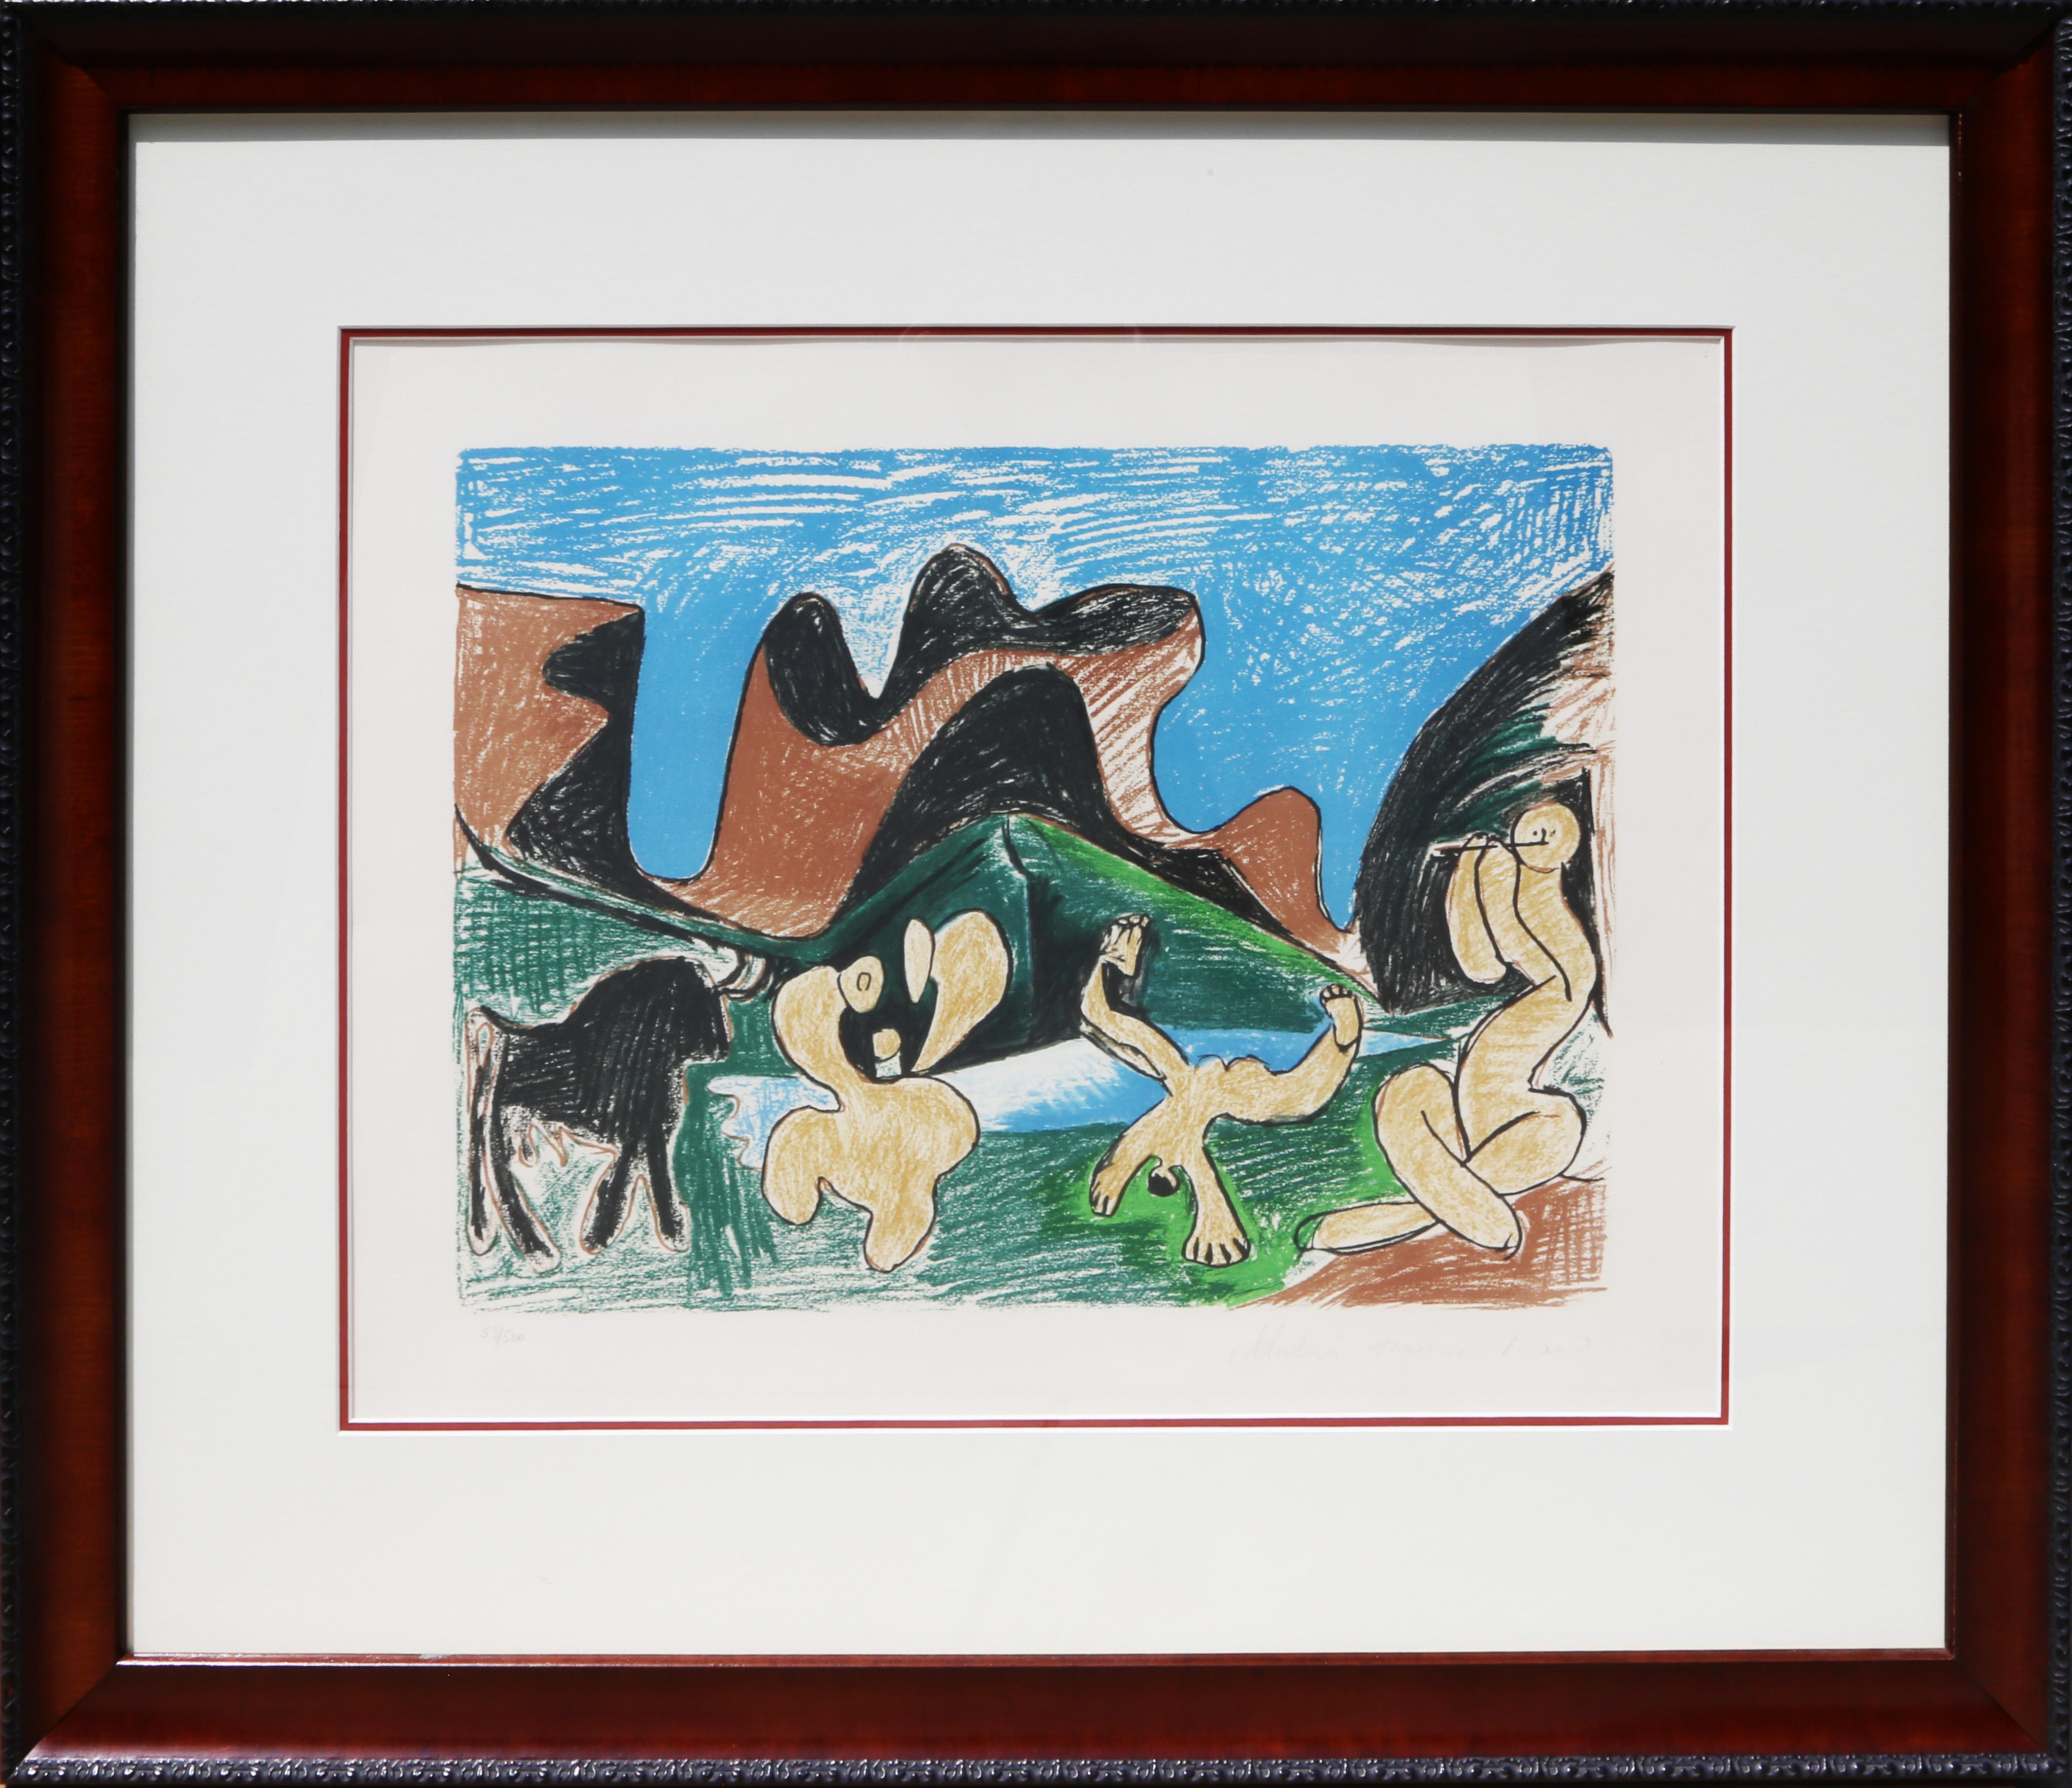 Eine Lithographie aus der Marina Picasso Estate Collection nach dem Gemälde "Bacchanale" von Pablo Picasso.  Das Originalgemälde wurde um 1922 fertiggestellt. In den 1970er Jahren, nach Picassos Tod, autorisierte Marina Picasso, seine Enkelin, die